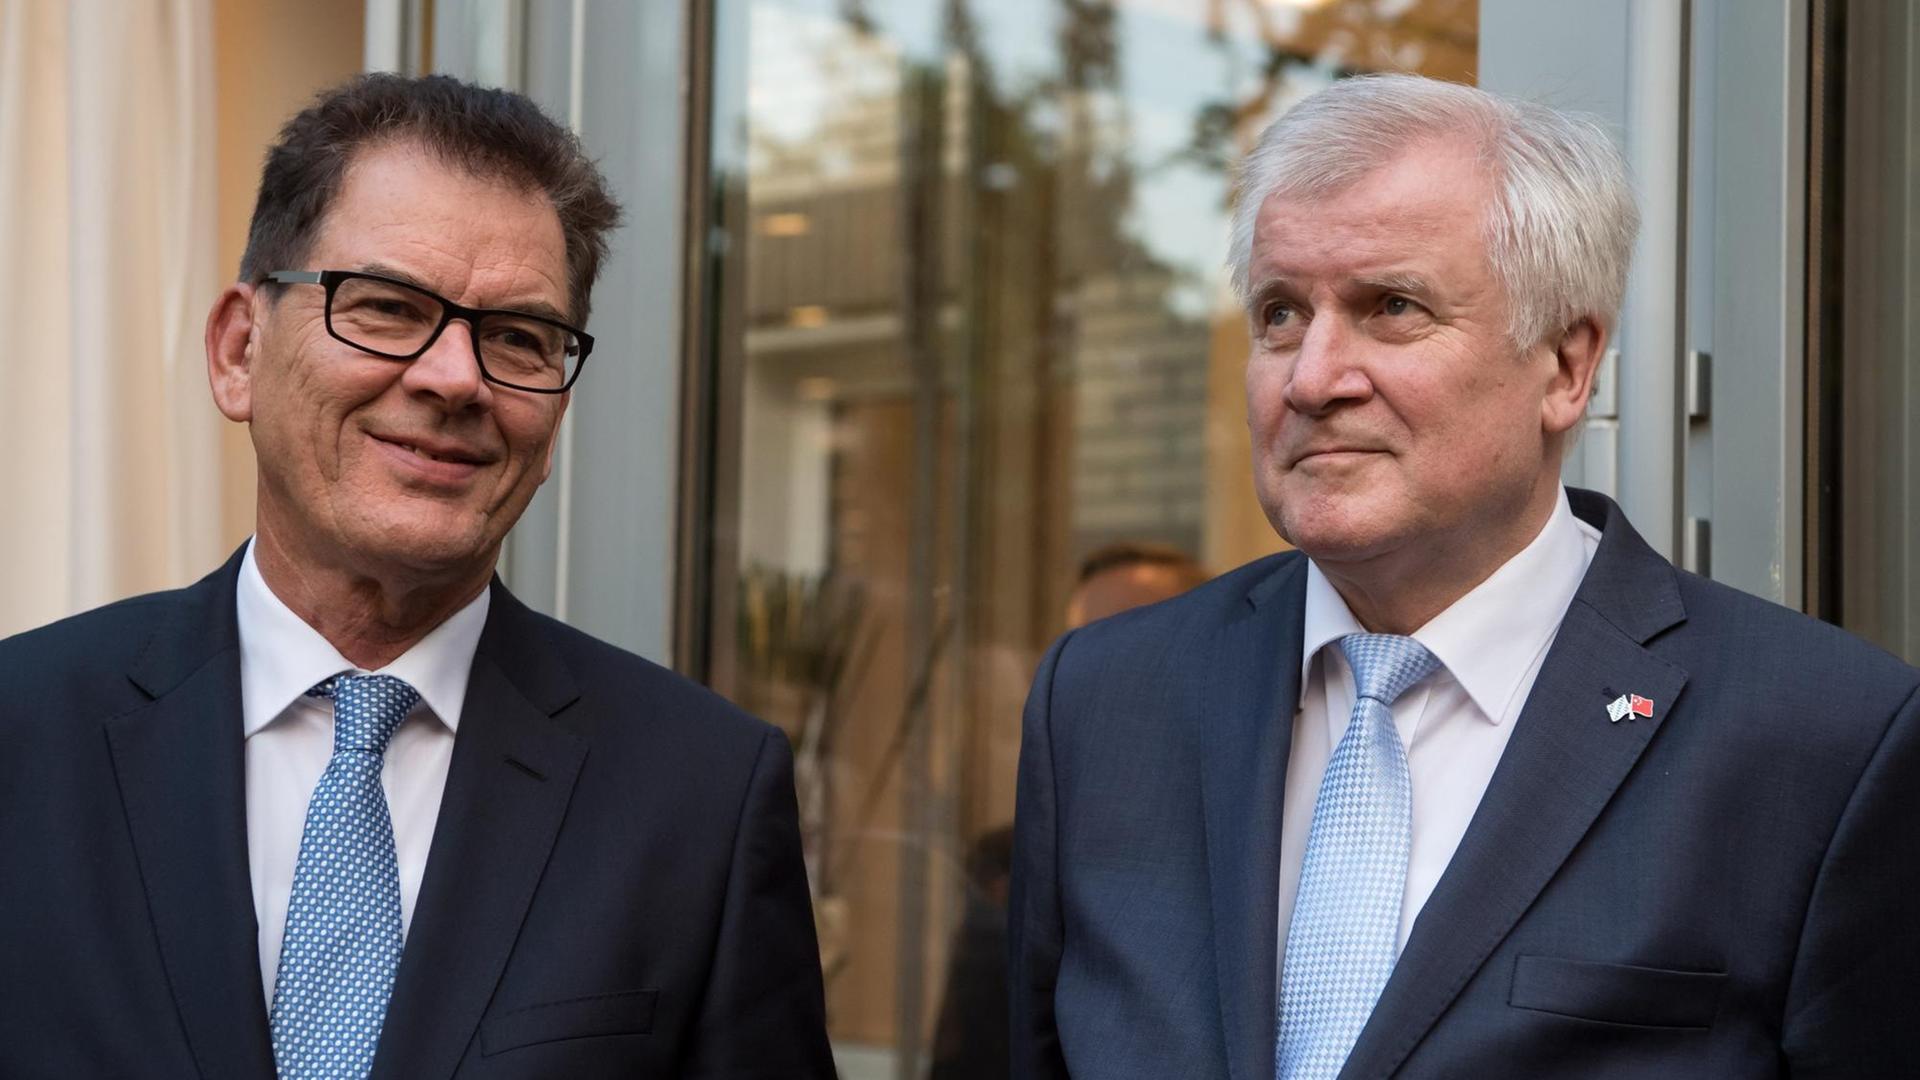 Der bayerische Ministerpräsident Horst Seehofer (r) und Bundesentwicklungsminister Gerd Müller (beide CSU) stehen am 10.05.2017 in der Deutschen Botschaft in Peking (China) bei einem Empfang nebeneinander.